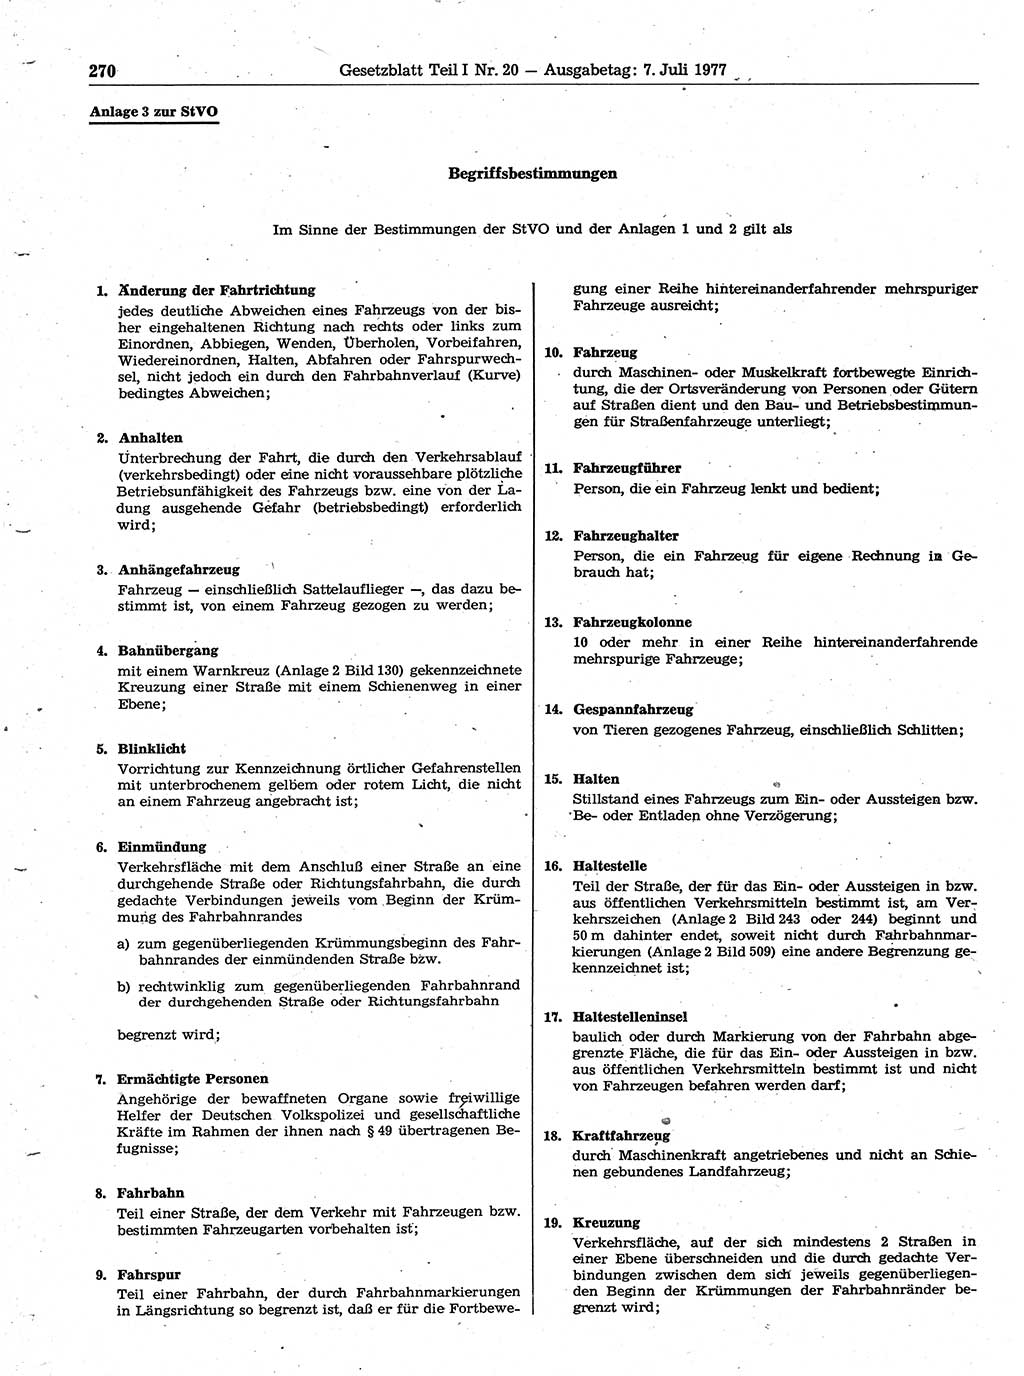 Gesetzblatt (GBl.) der Deutschen Demokratischen Republik (DDR) Teil Ⅰ 1977, Seite 270 (GBl. DDR Ⅰ 1977, S. 270)